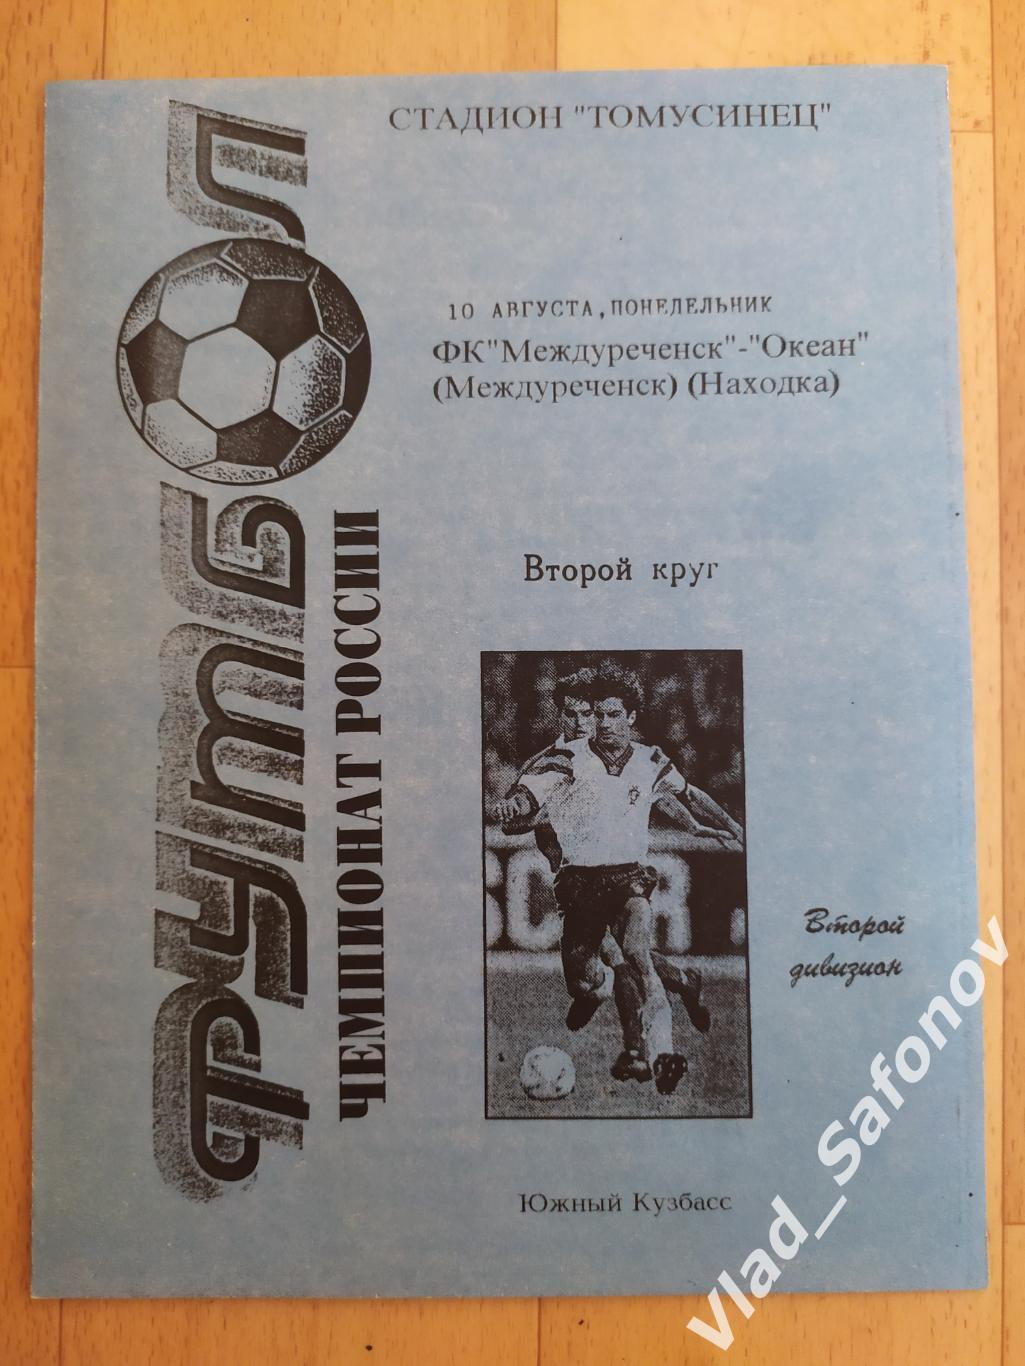 Междуреченск - Океан(Находка). 2 лига. 10/08/1998